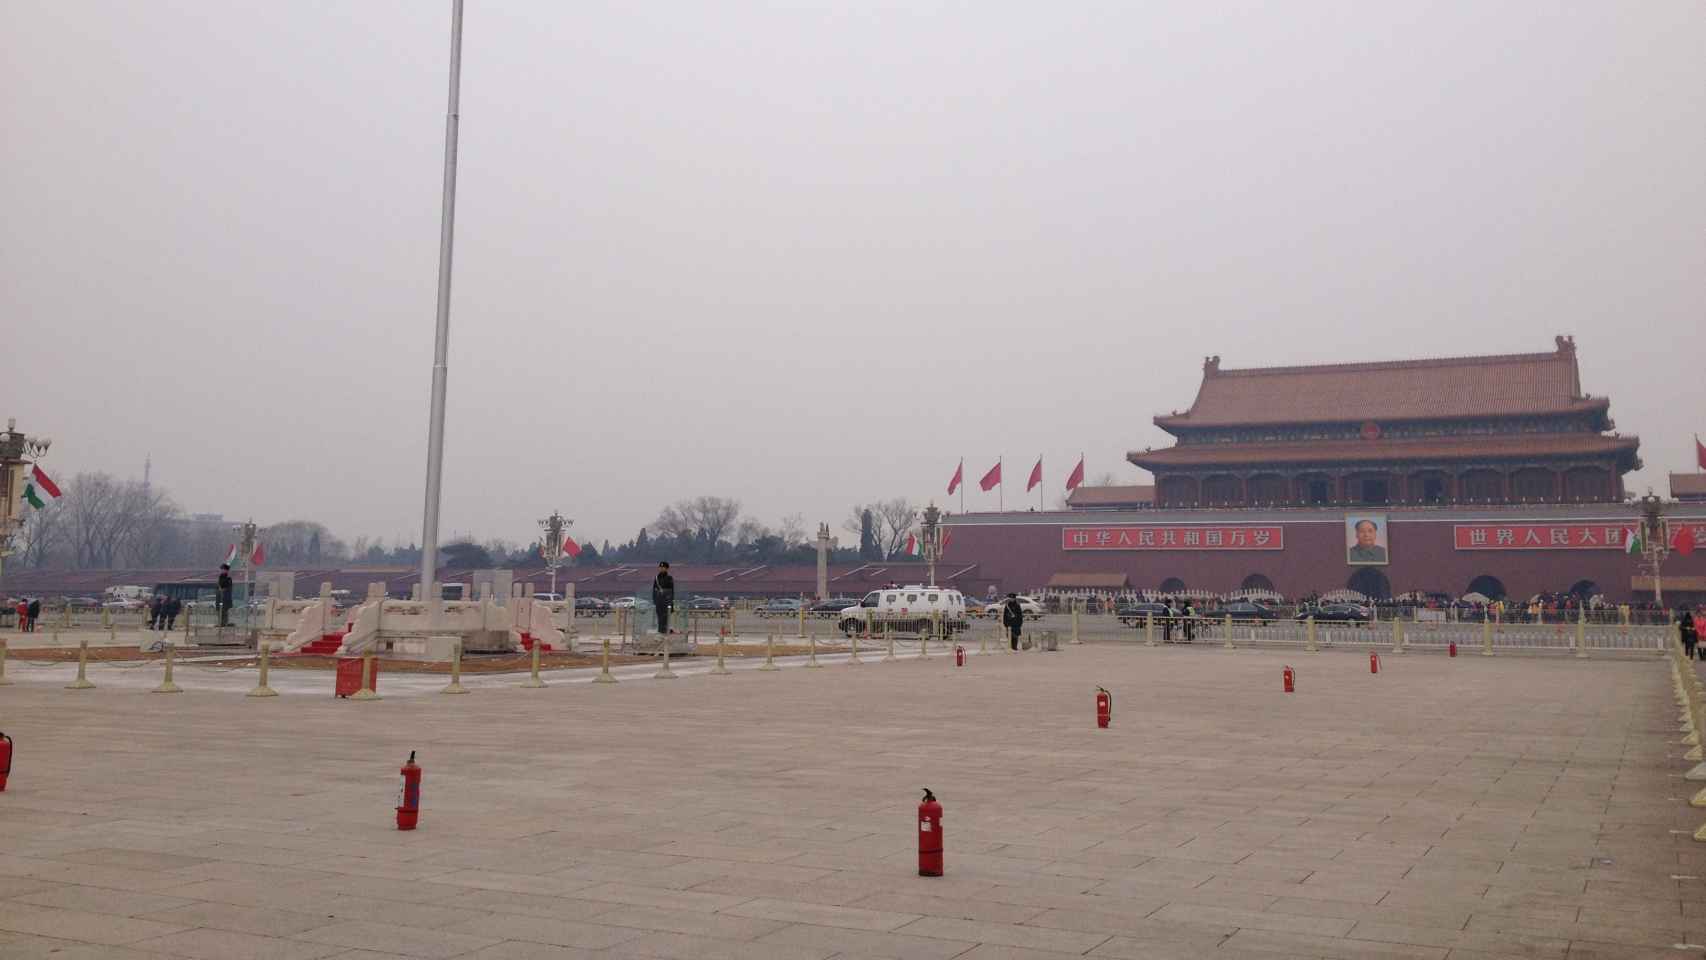 La plaza de Tiananmen luce desde hace unos años repleta de extintores.